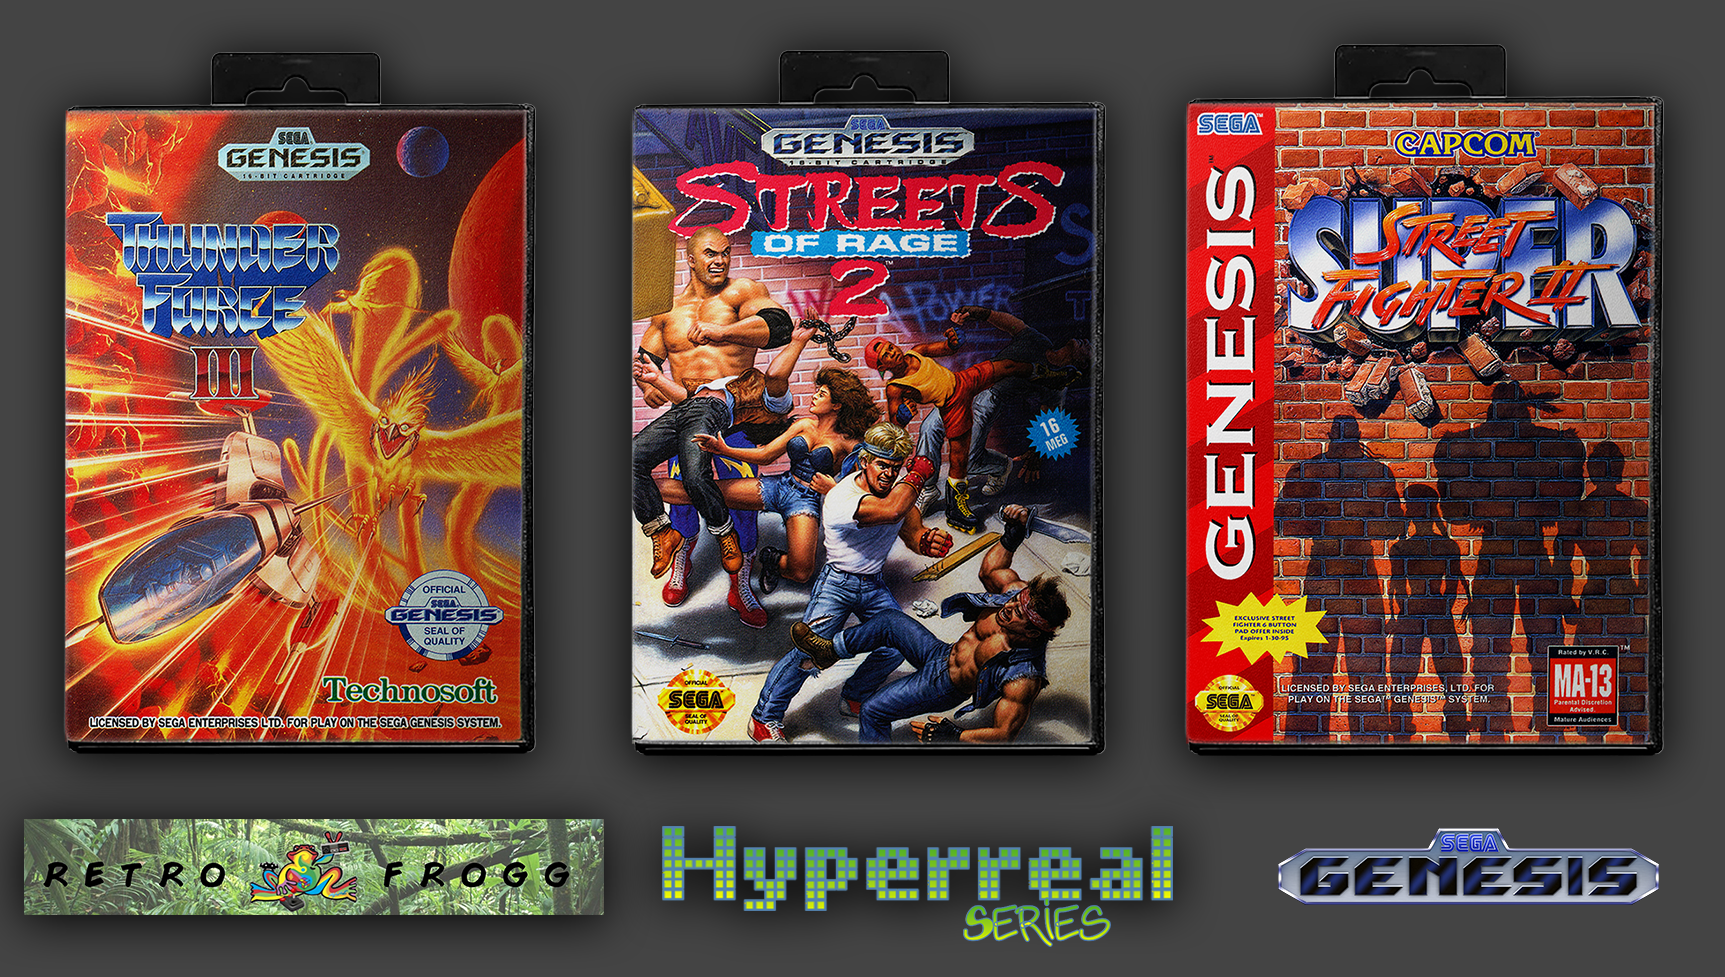 Sega Genesis (USA/North America) 2.5D Front Box Art Pack, Hyperreal Series